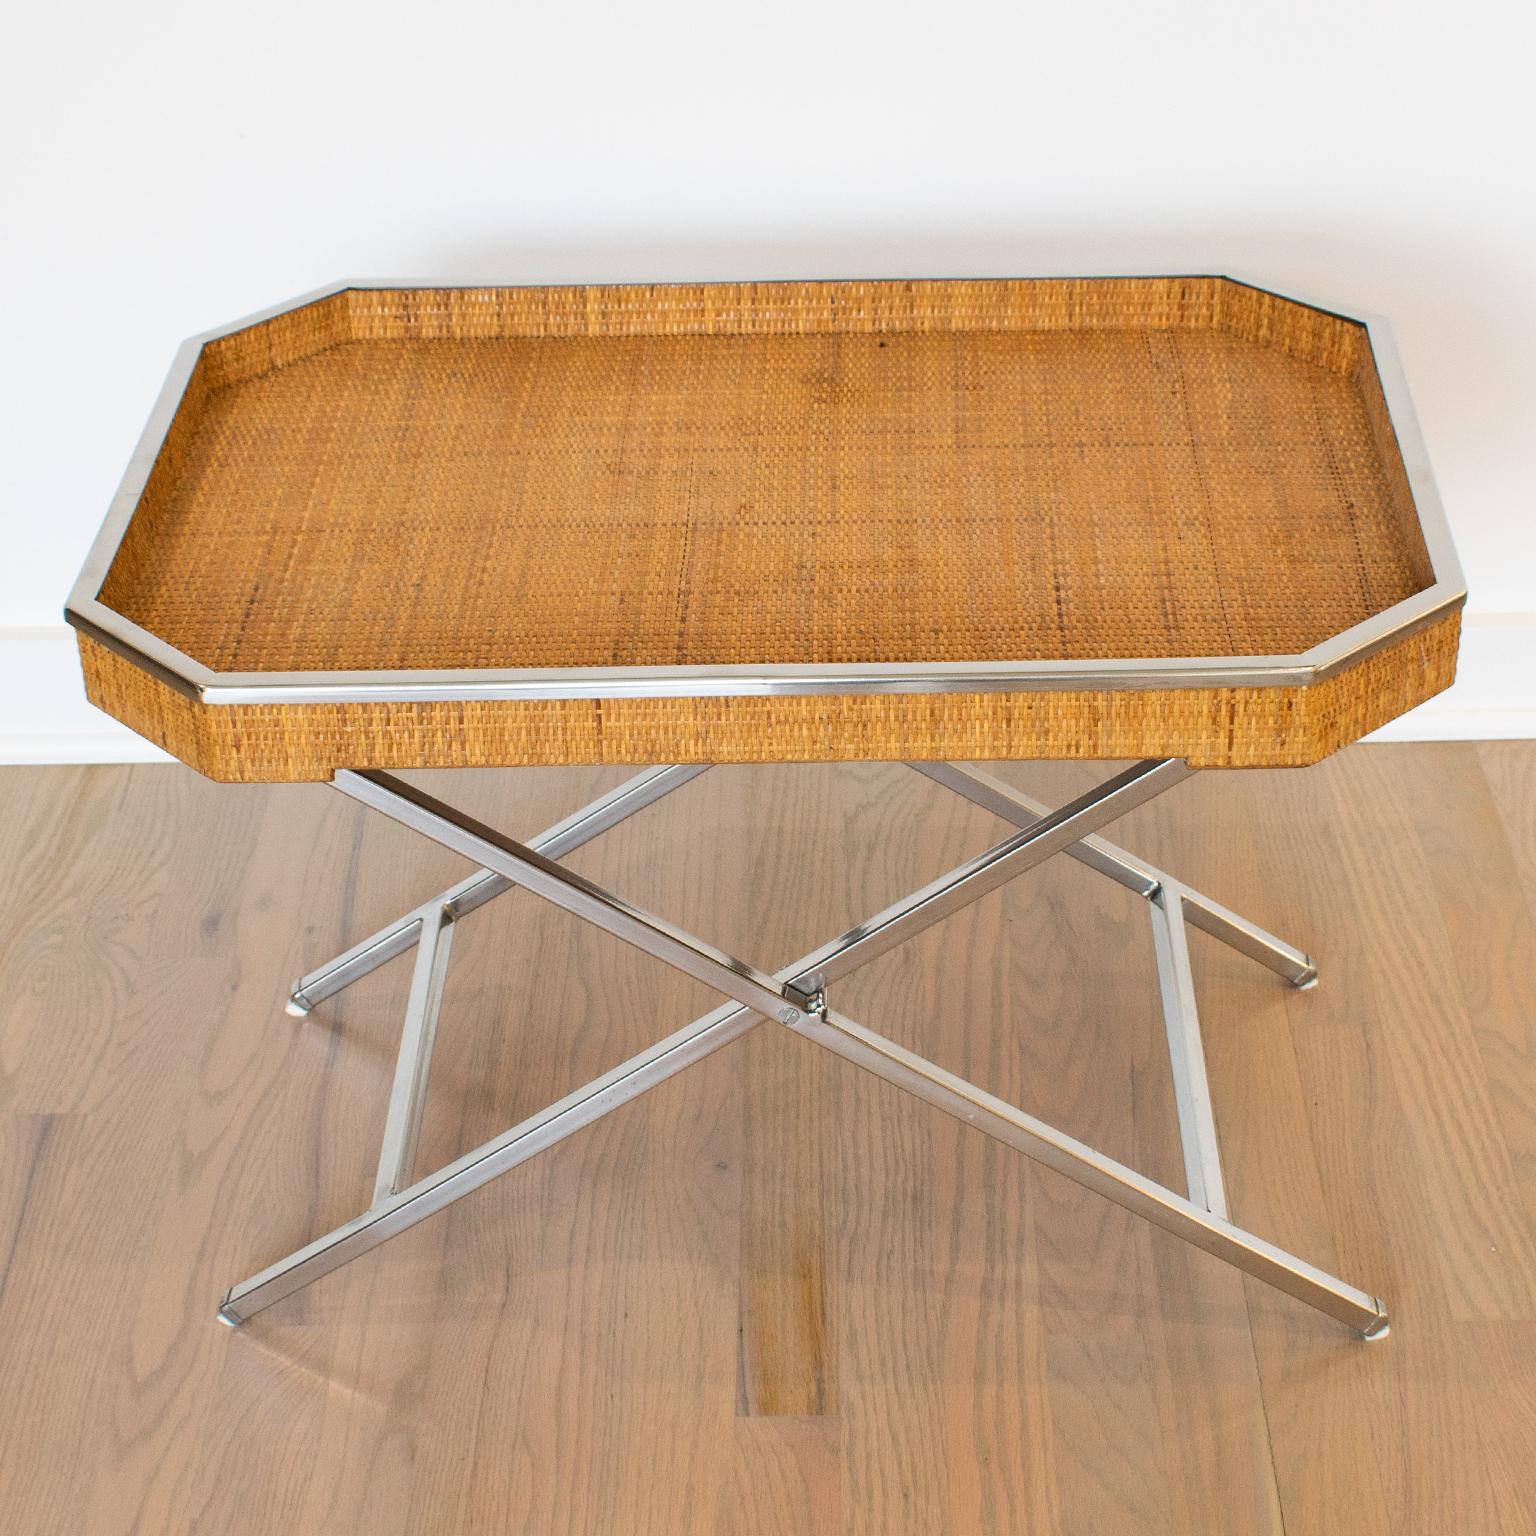 Tommaso Barbi a conçu cette élégante grande table à plateaux pliants pour le bar en Italie dans les années 1970. La forme rectangulaire du majordome est agrémentée d'une galerie surélevée en métal chromé et d'un cannage en rotin véritable ou en